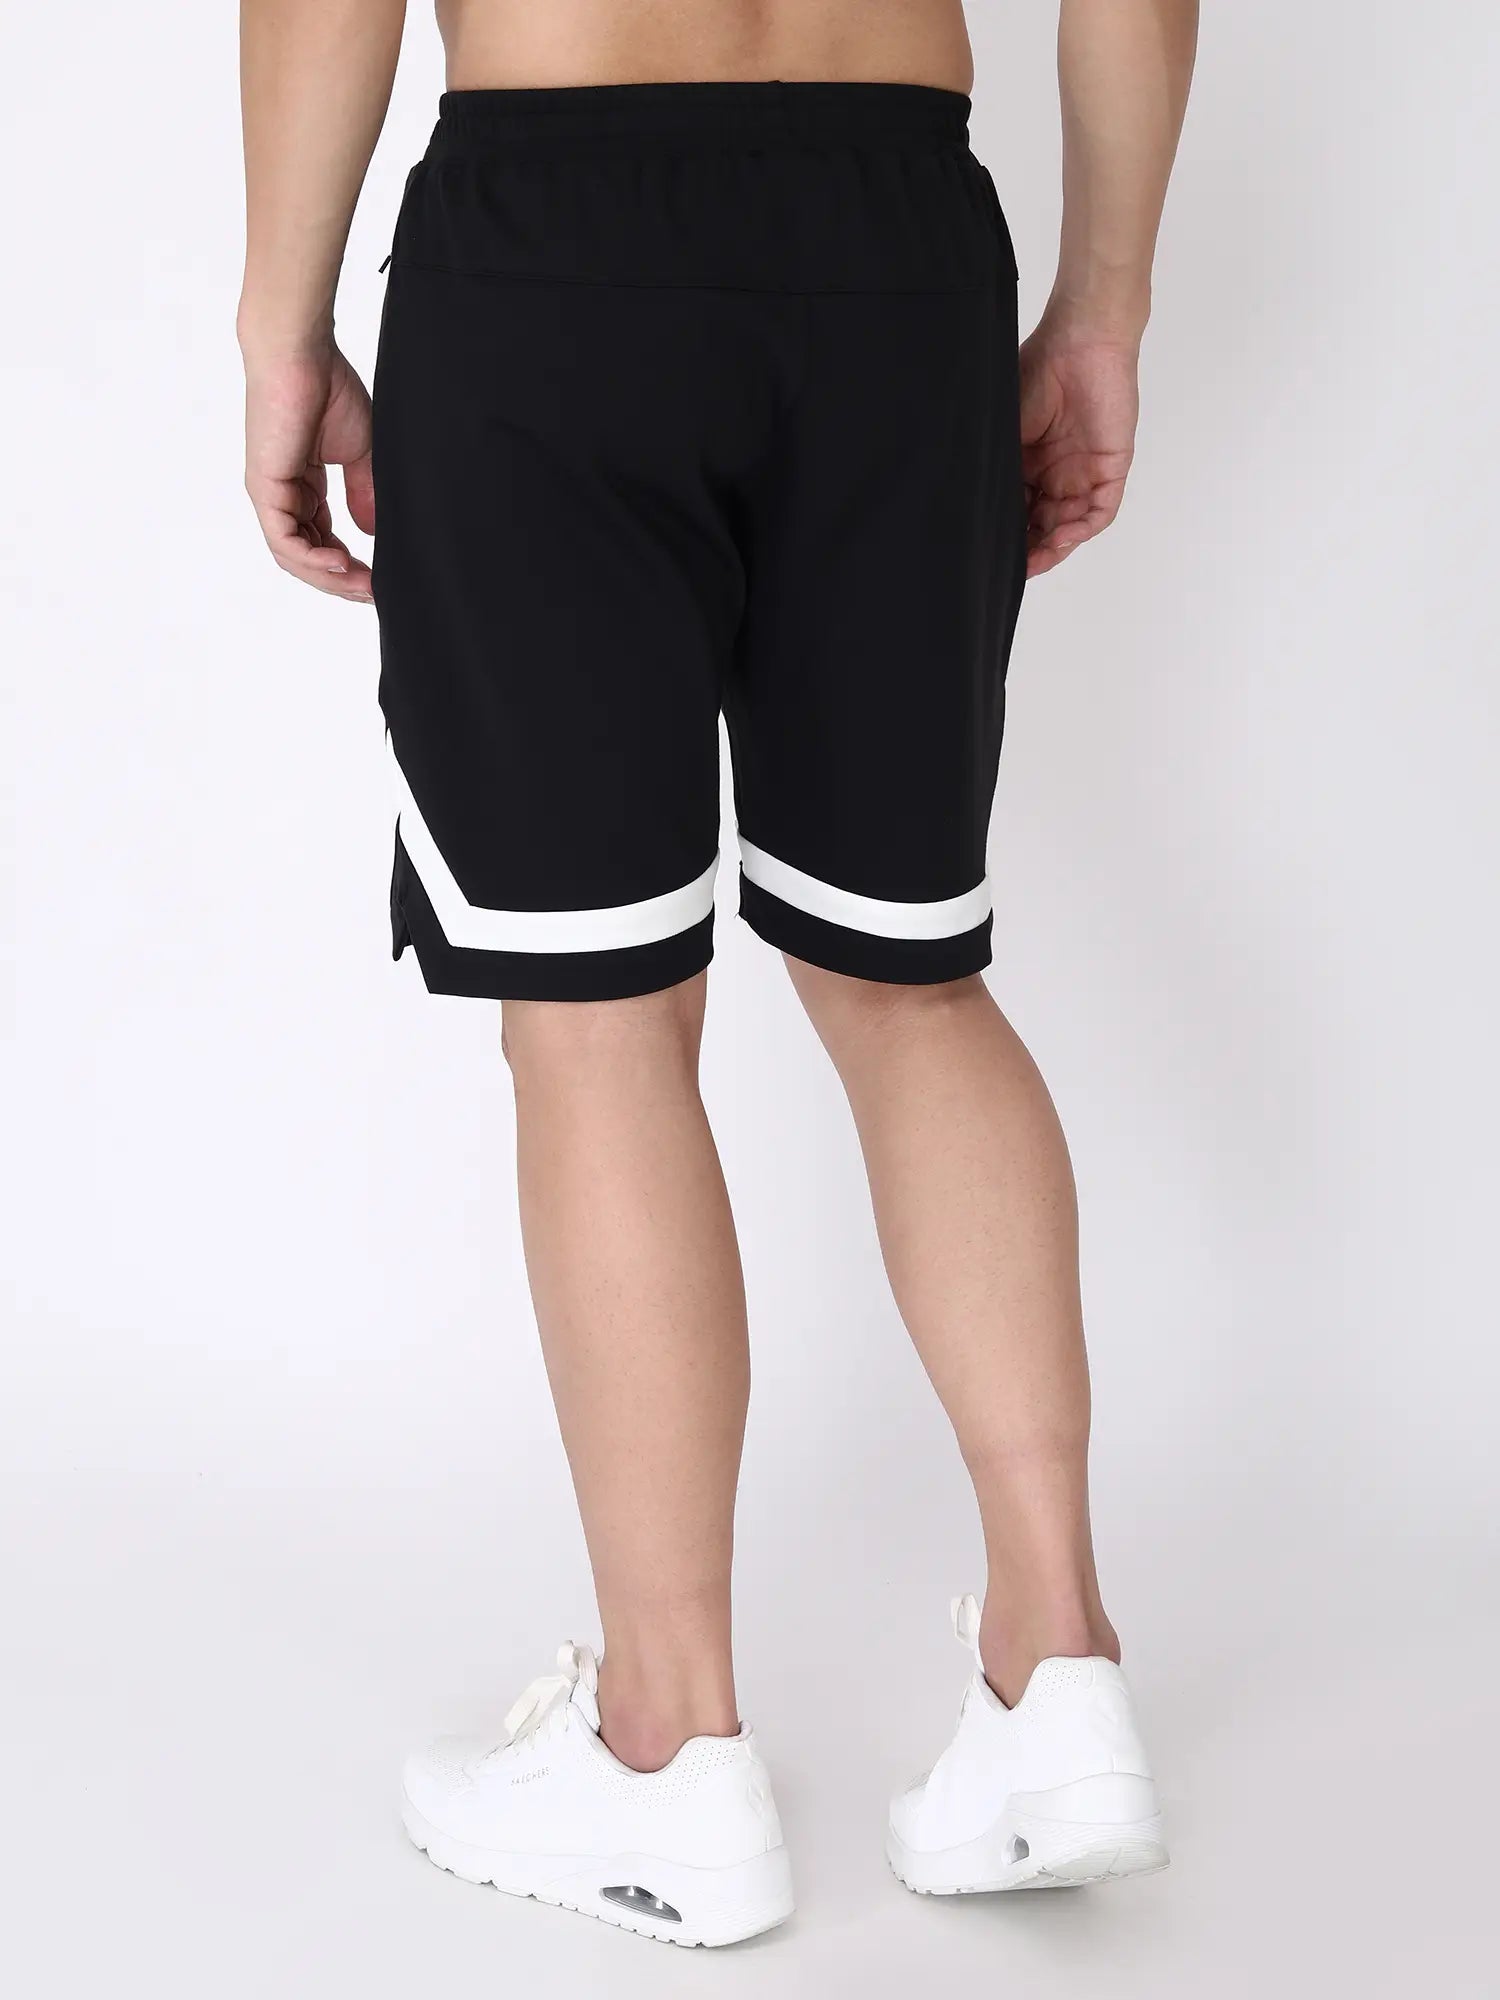 Jeffa FlexFit Shorts in Black